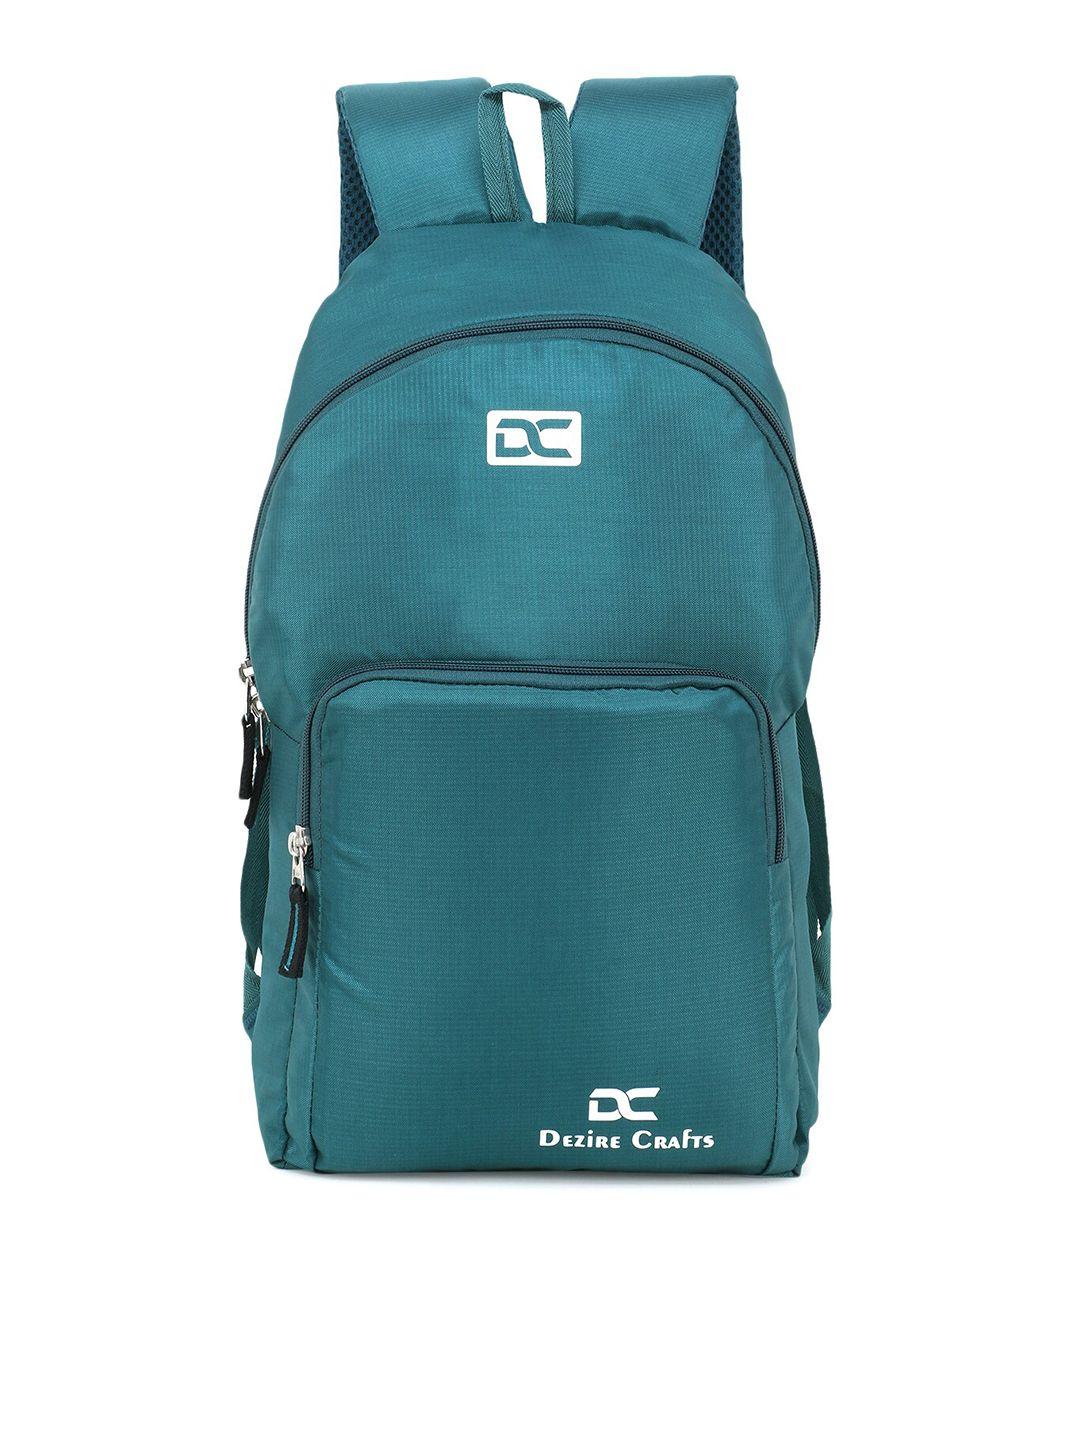 dezire crafts unisex teal blue backpack